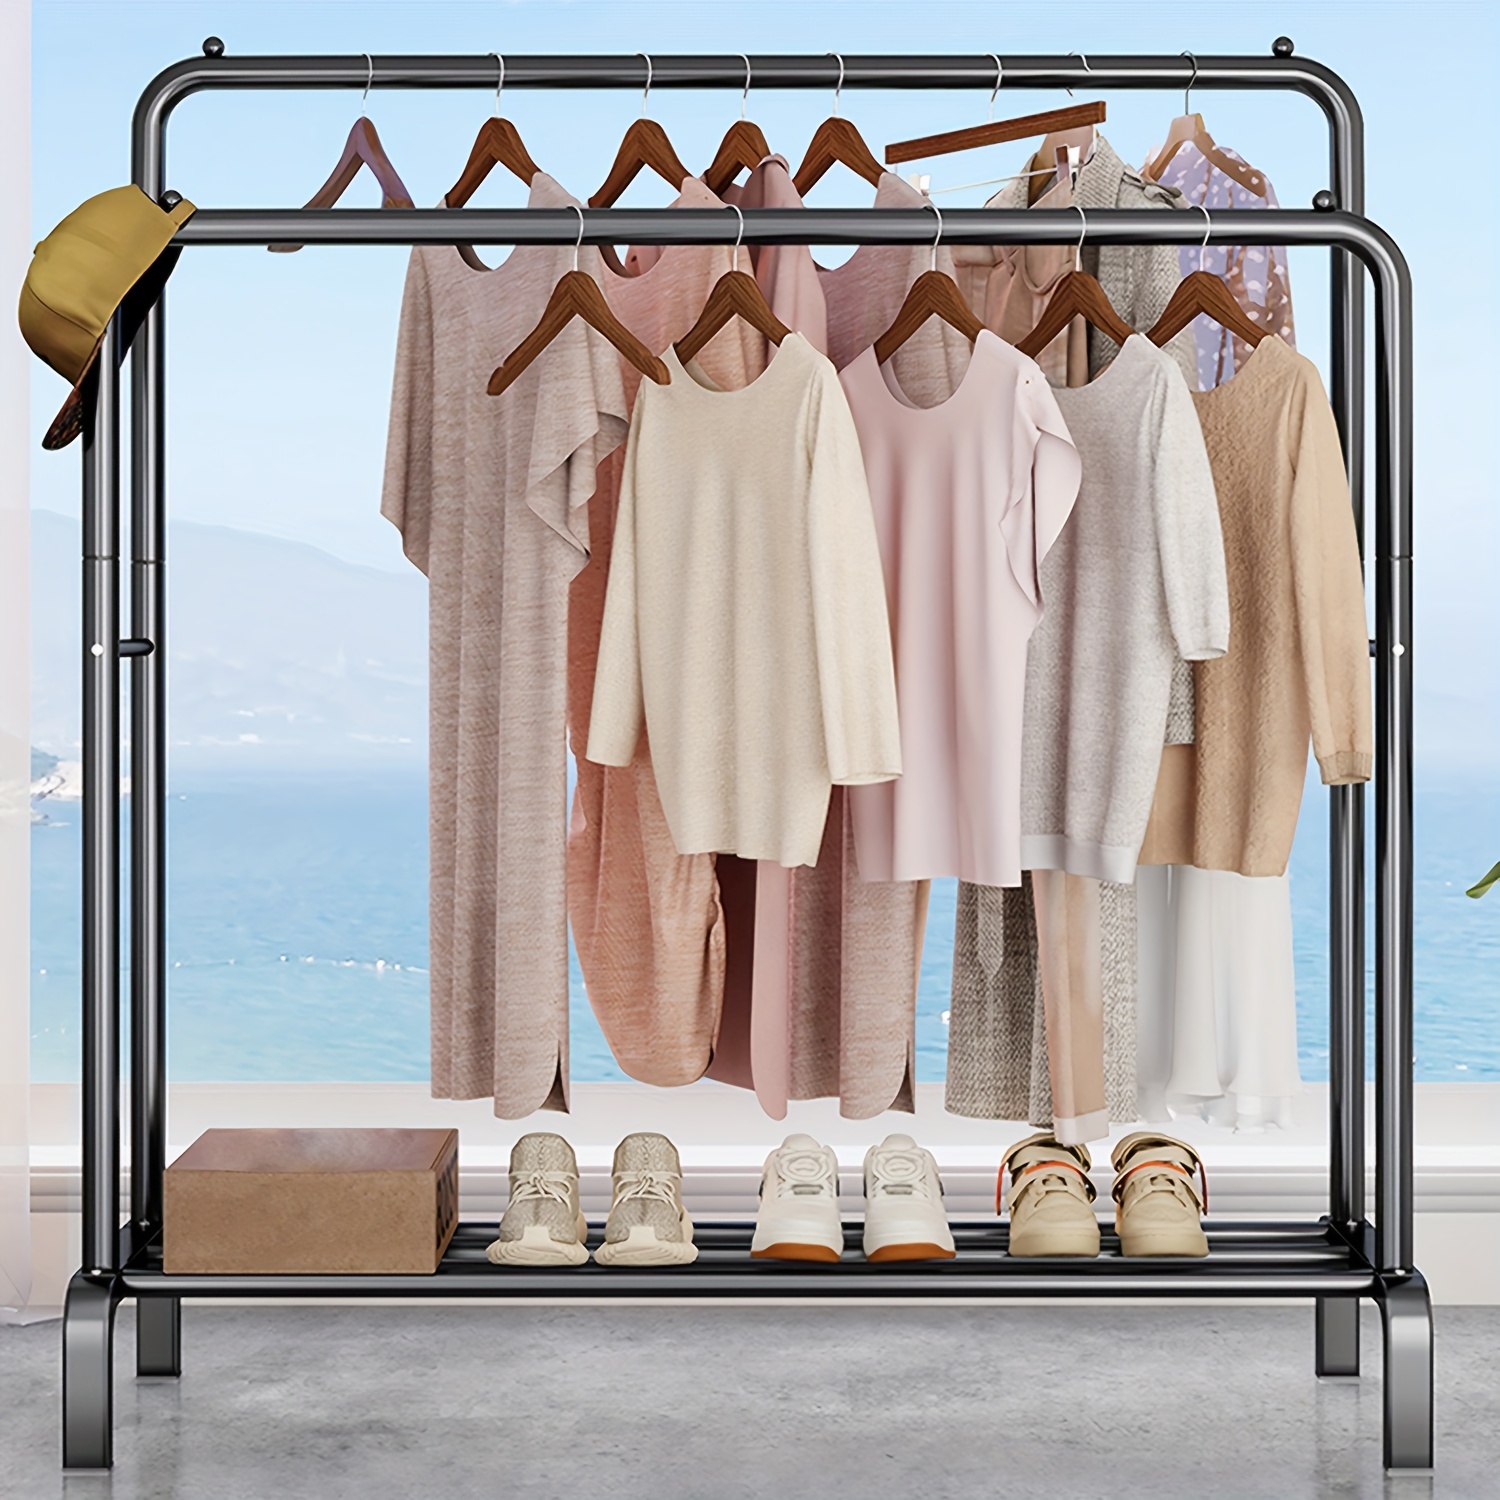 Moderno y simple colgador de ropa para colgar ropa, con estante de madera  de 2 niveles, barra para colgar ropa, zapatos, bolsas, estantes para